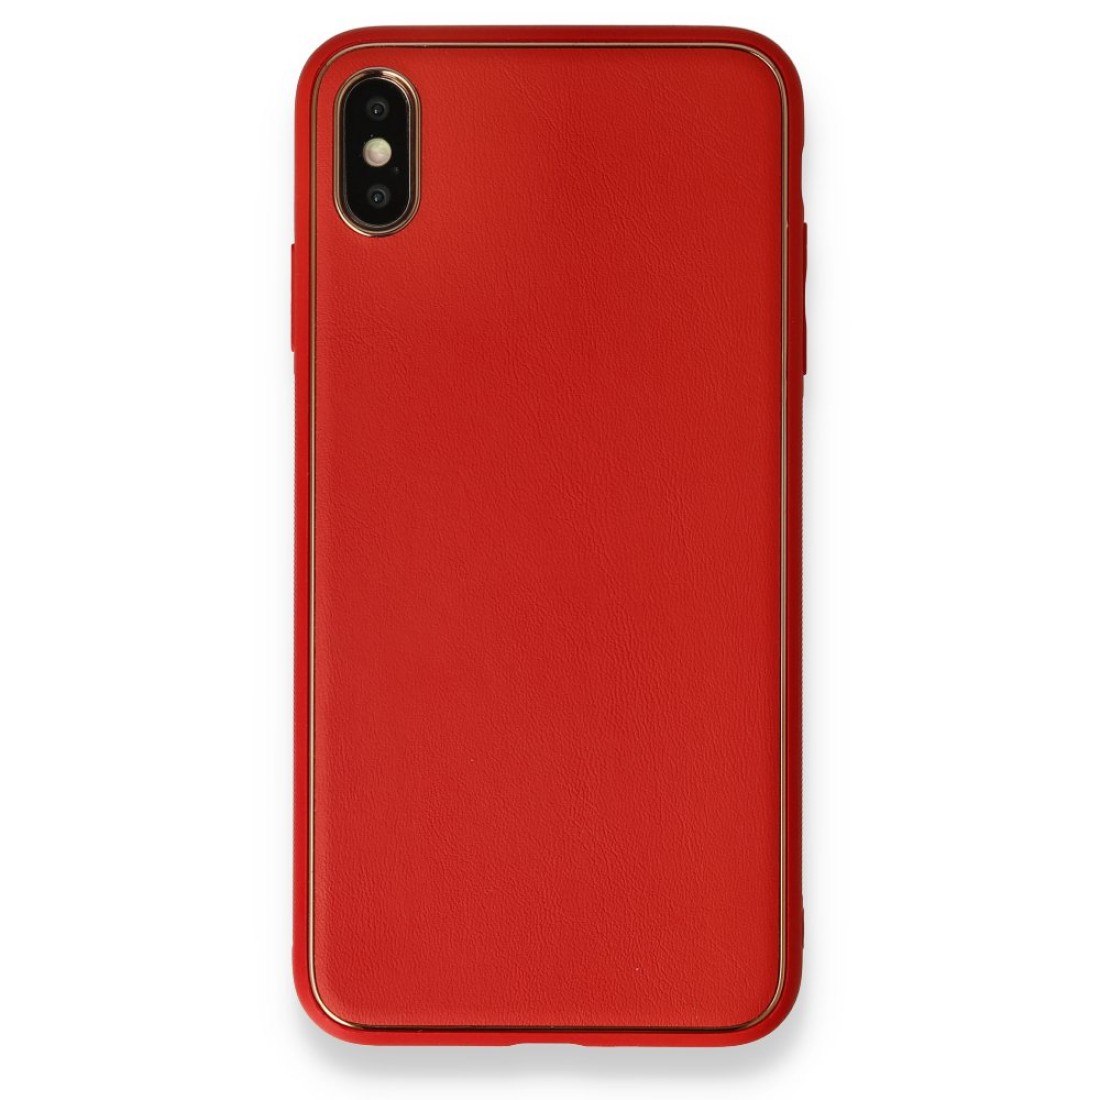 Apple iPhone X Kılıf Coco Deri Silikon Kapak - Kırmızı